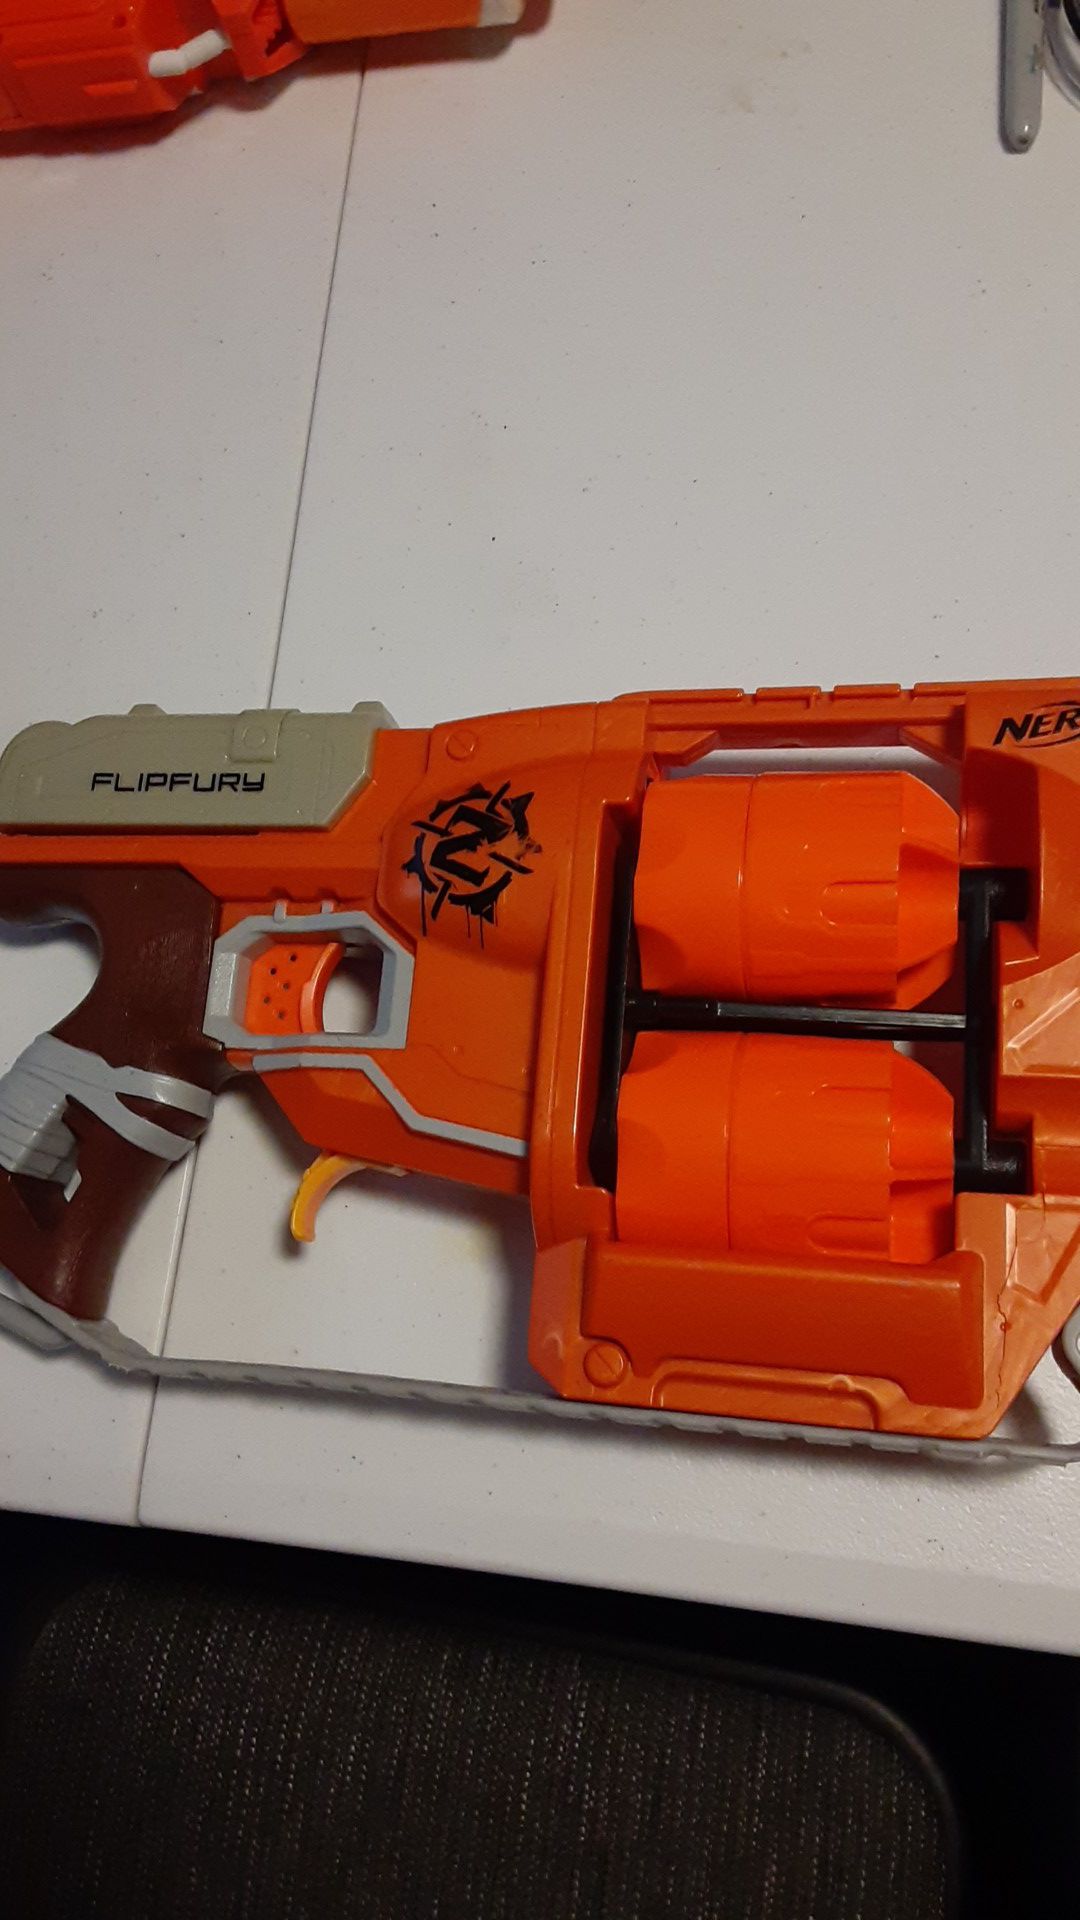 Nerf gun for kids